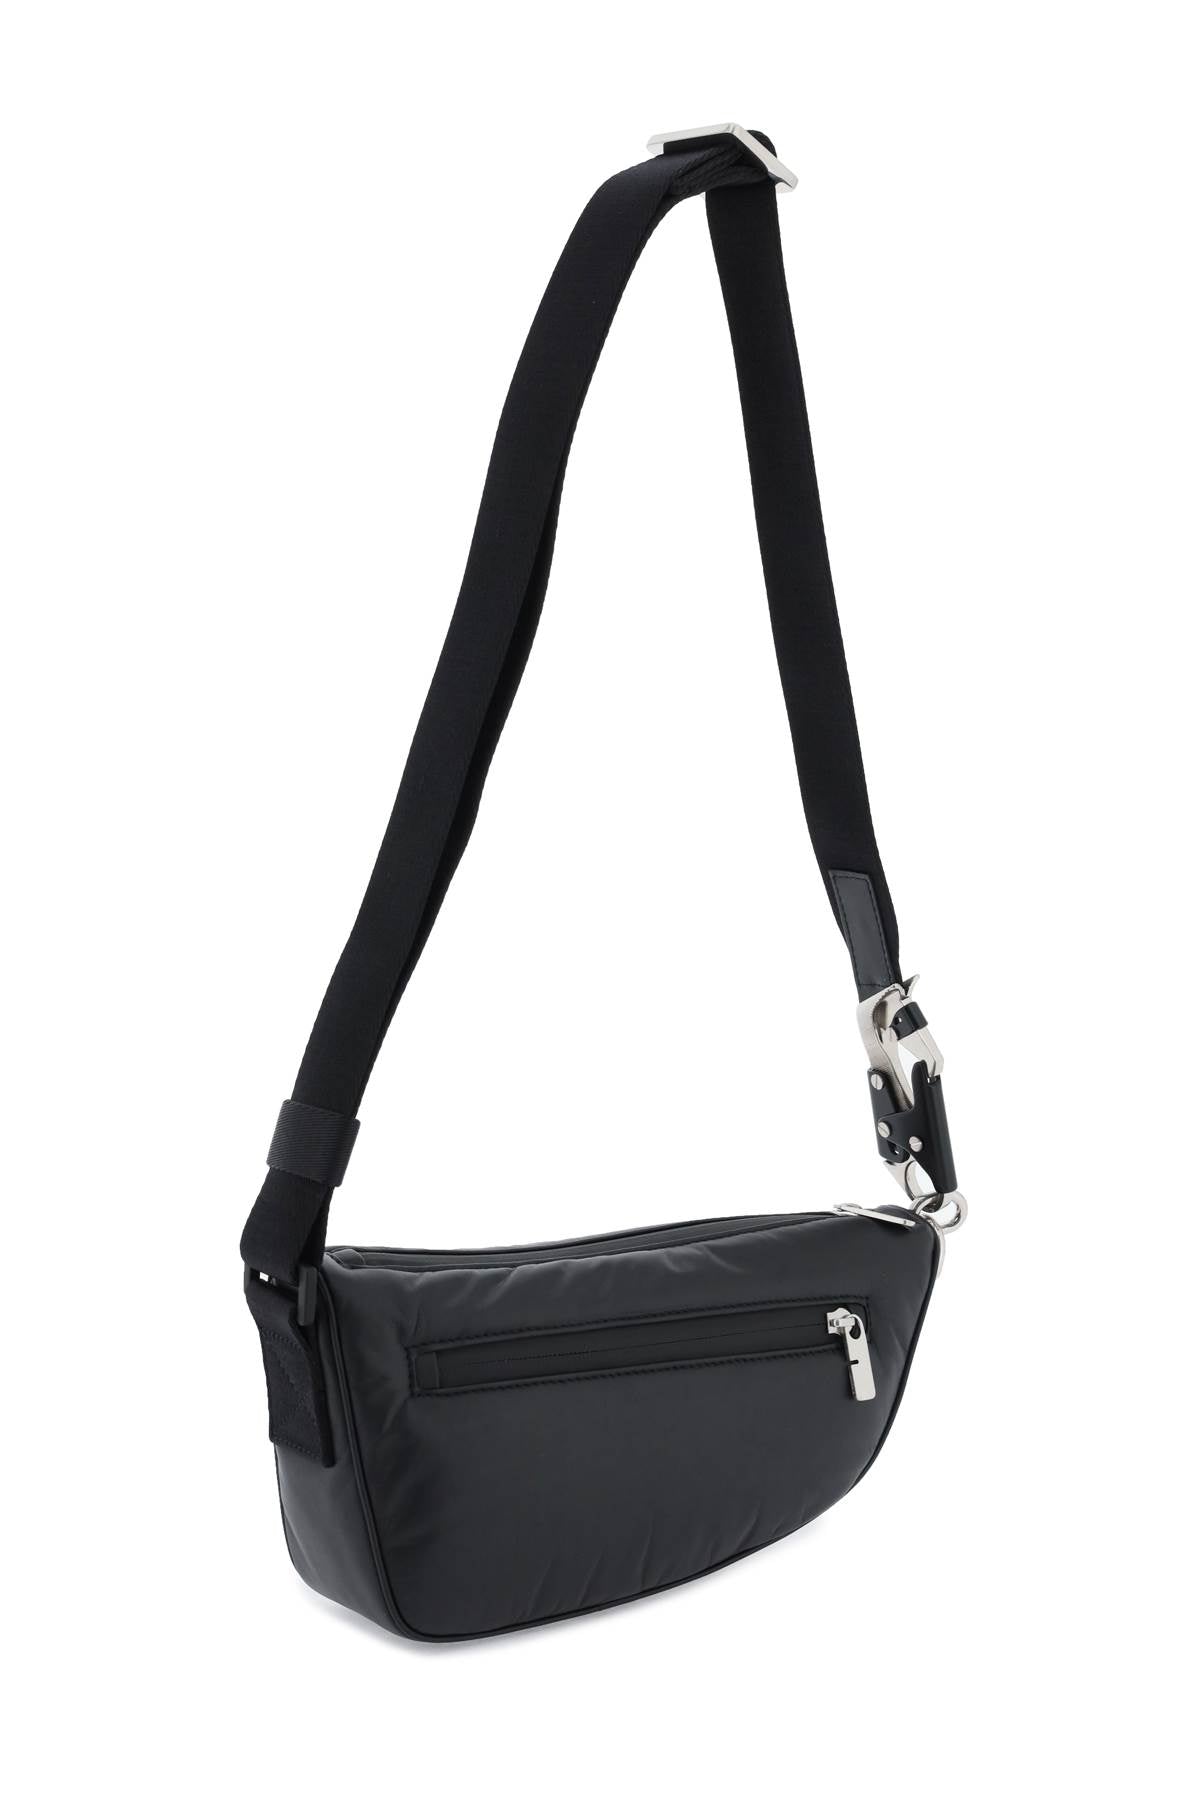 Túi đeo chéo Burberry Shield màu đen cho phụ nữ